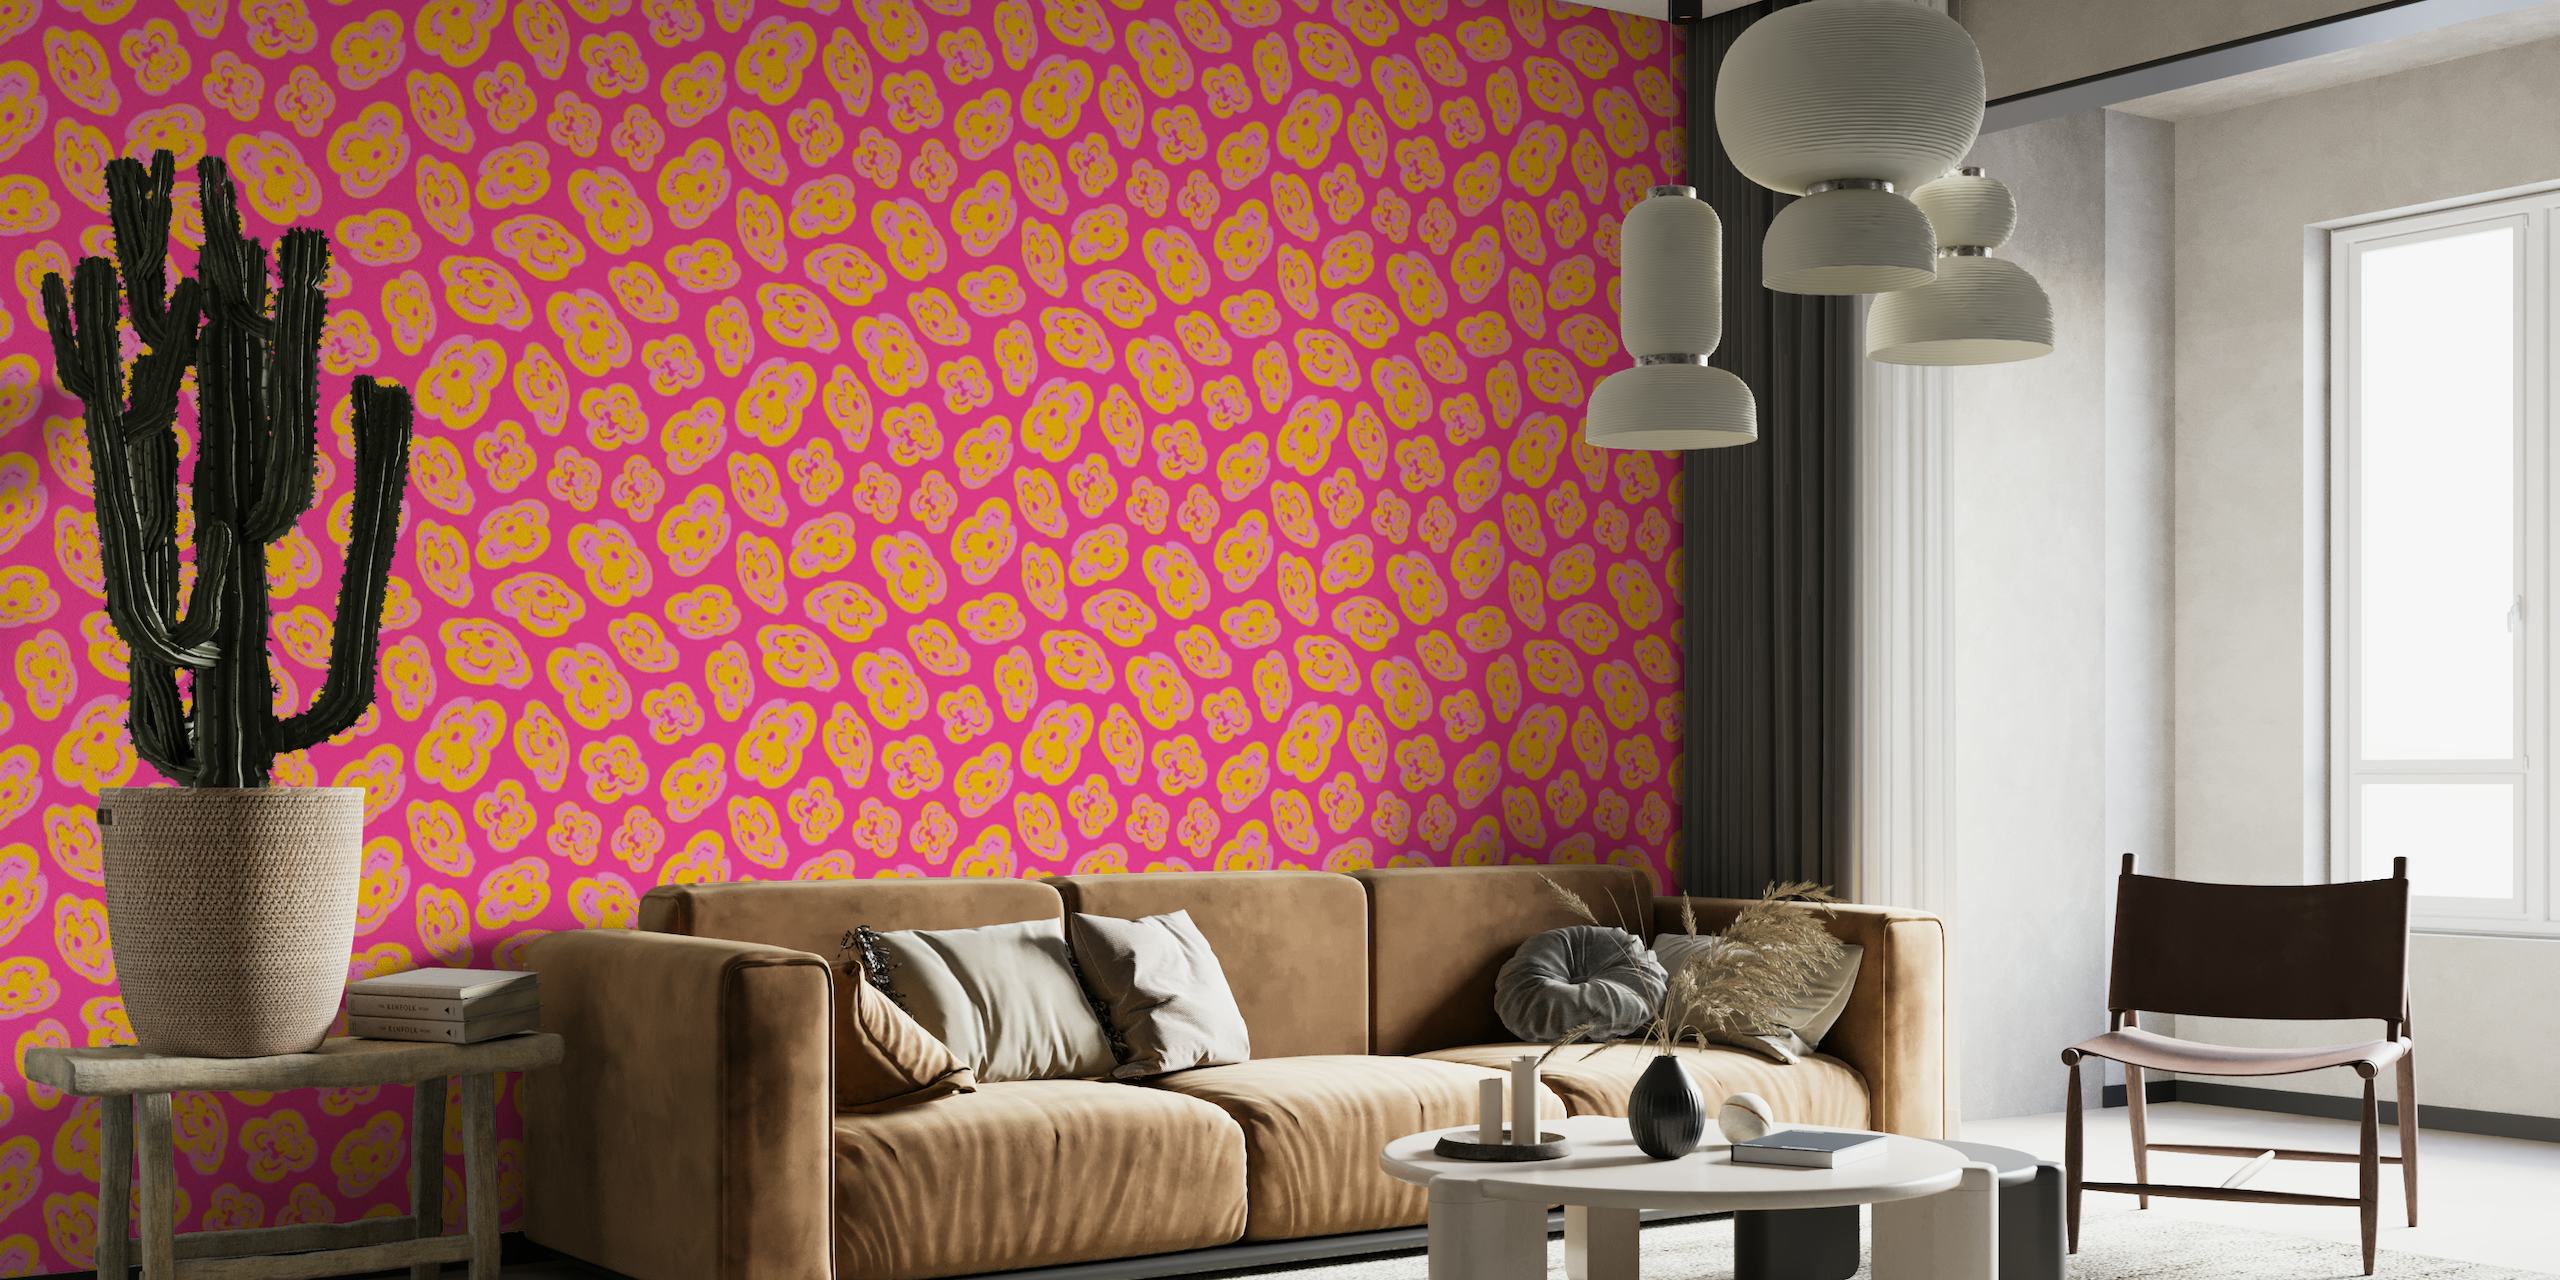 Apstraktni lebdeći uzorci ljiljana u nijansama žute i ružičaste na zidnoj tapeti boje fuksije